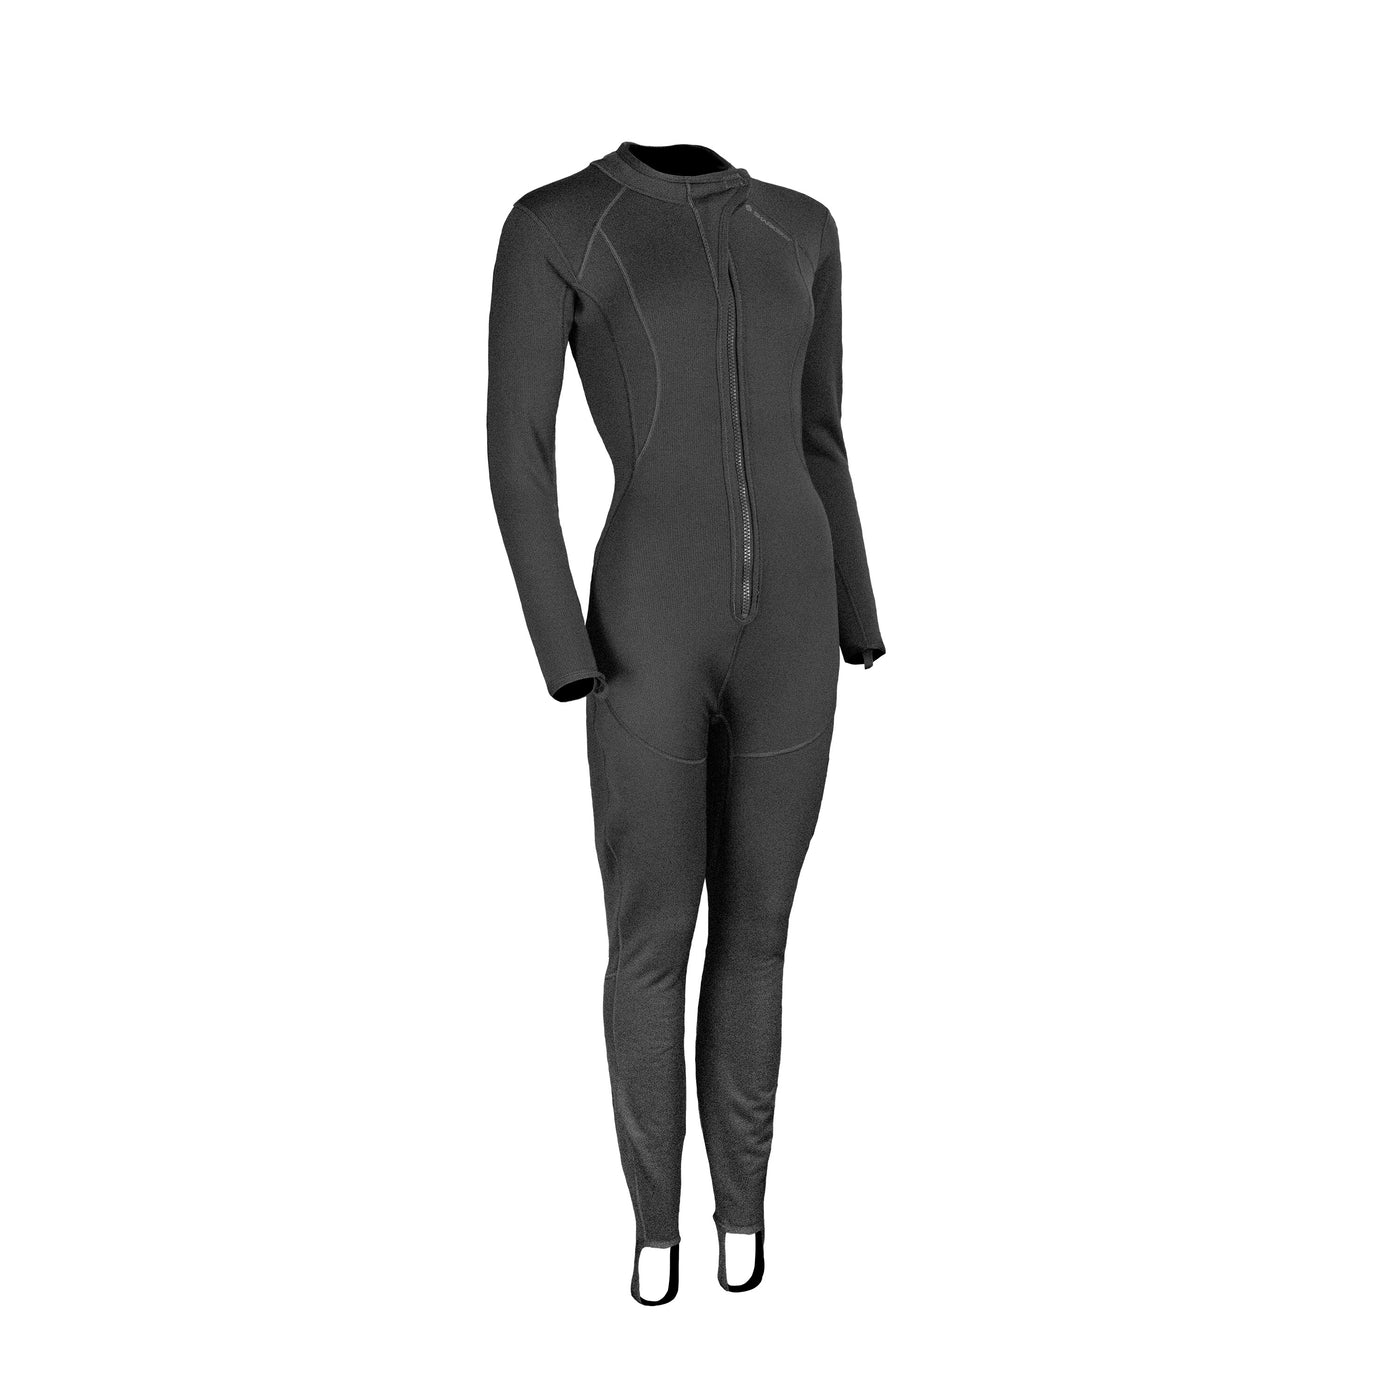 Titanium 2 Front Zip Suit (Female)